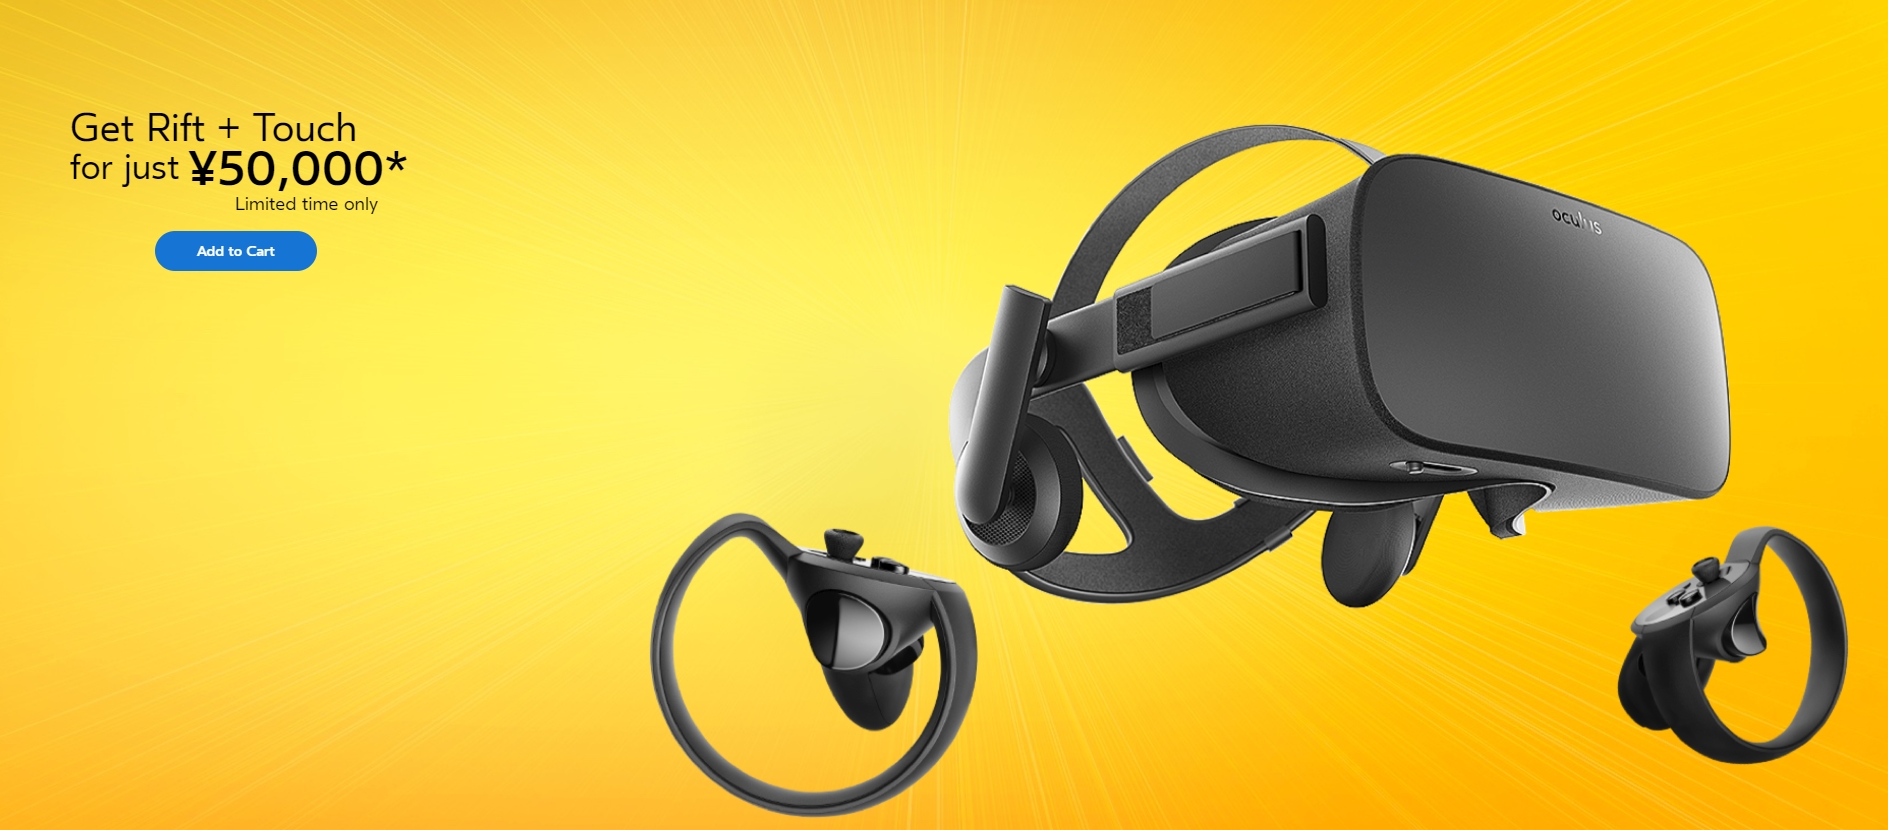 Oculus VR本体と専用コントローラーOculus Touchのセットが期間限定で